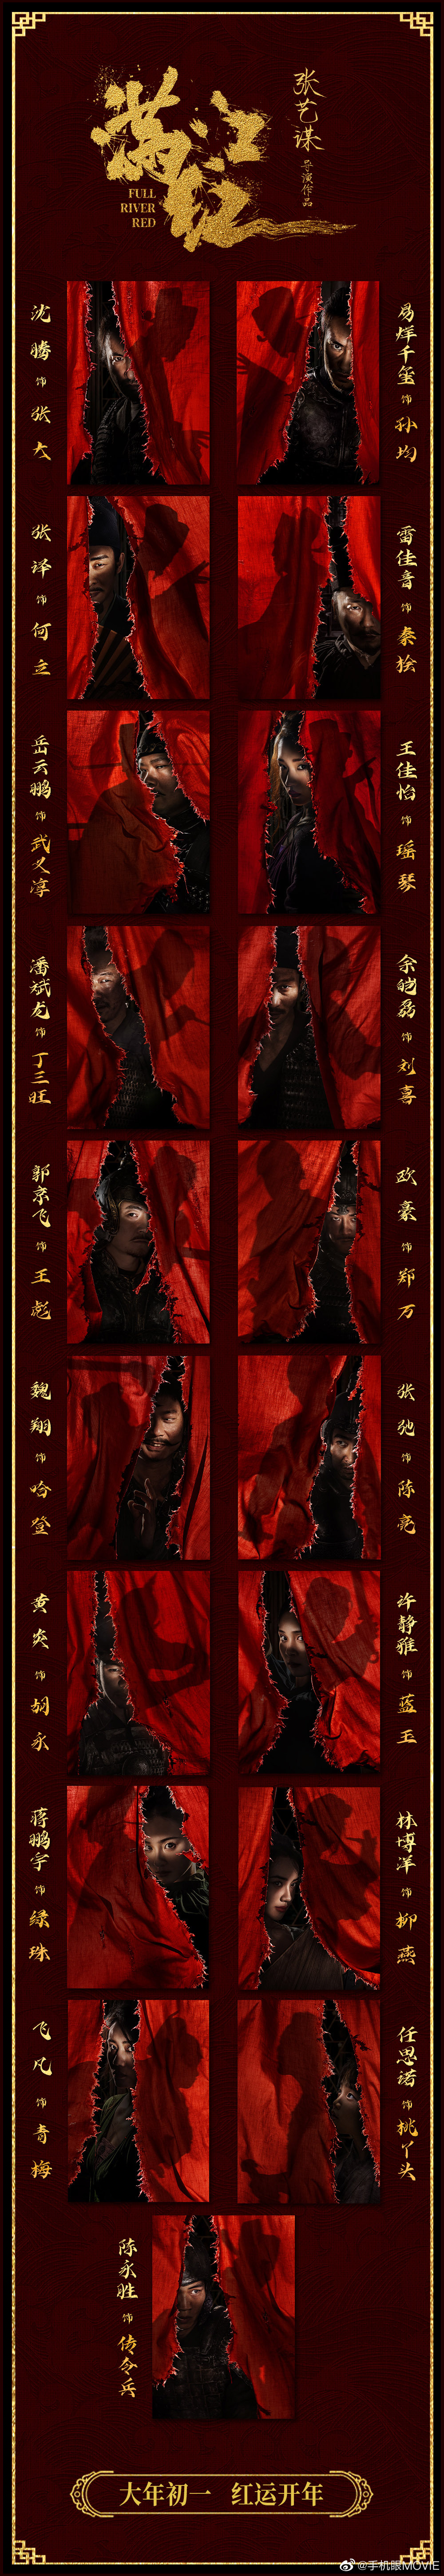 《满江红》演员表一览 《满江红》全员角色揭晓身份性格人物关系解析